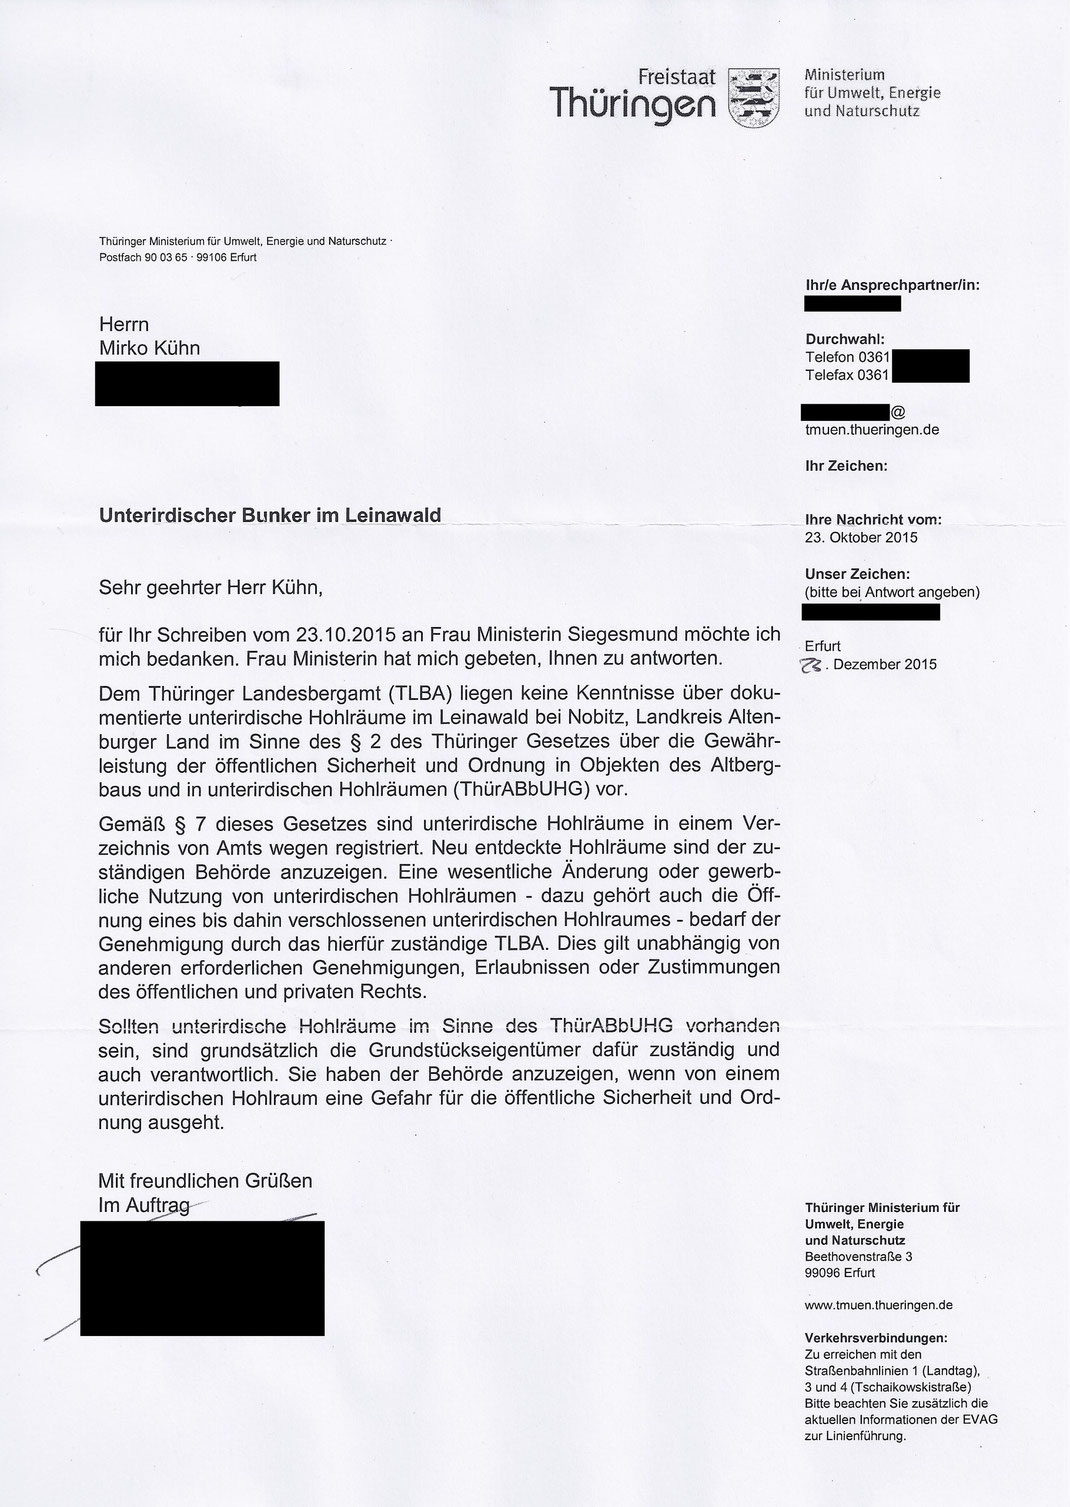 23. Dezember 2015 Brief Thüringer Ministerium für Umwelt, Energie und Naturschutz (TMUEN) / Quelle: Mirko Kühn